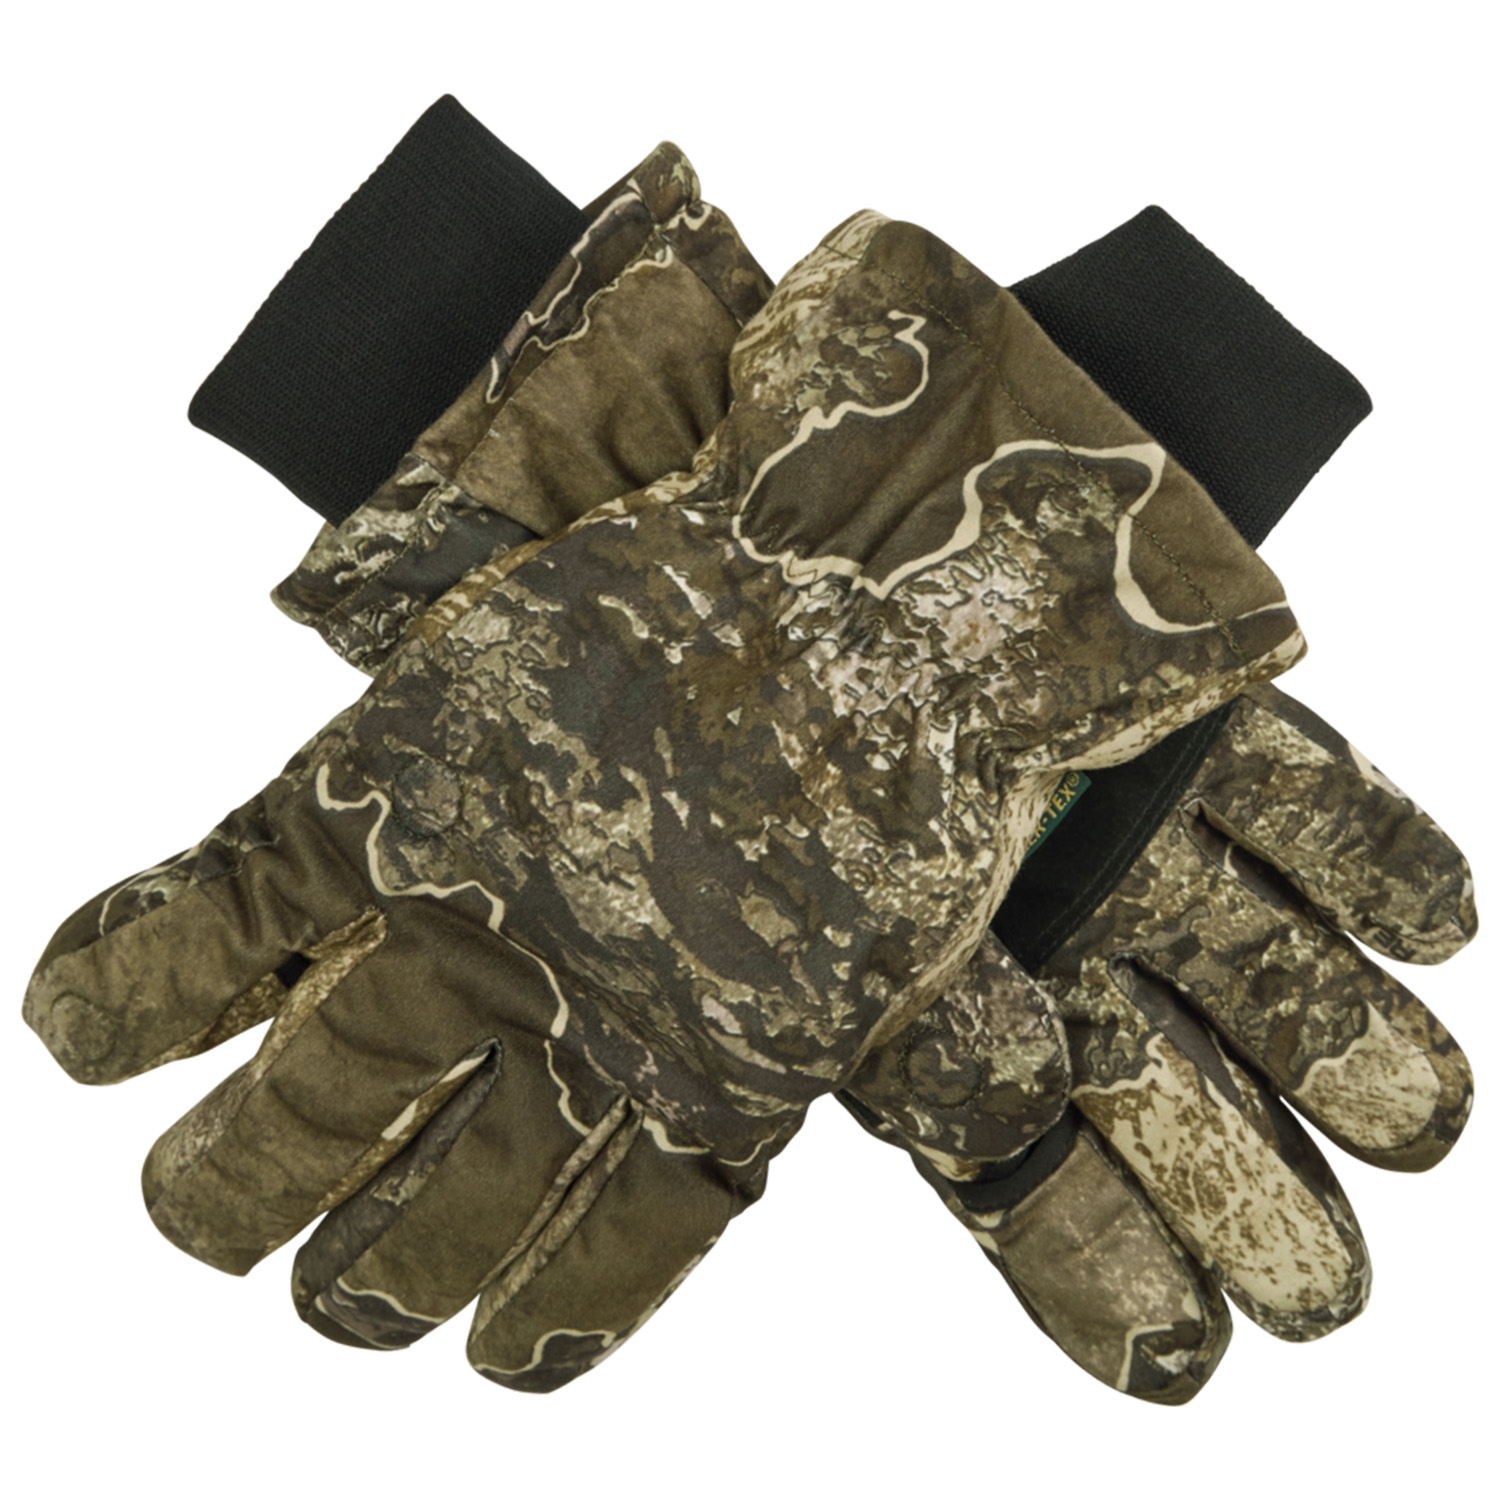  Deerhunter Winterhandschoenen Excape (Realtree) - Handschoenen